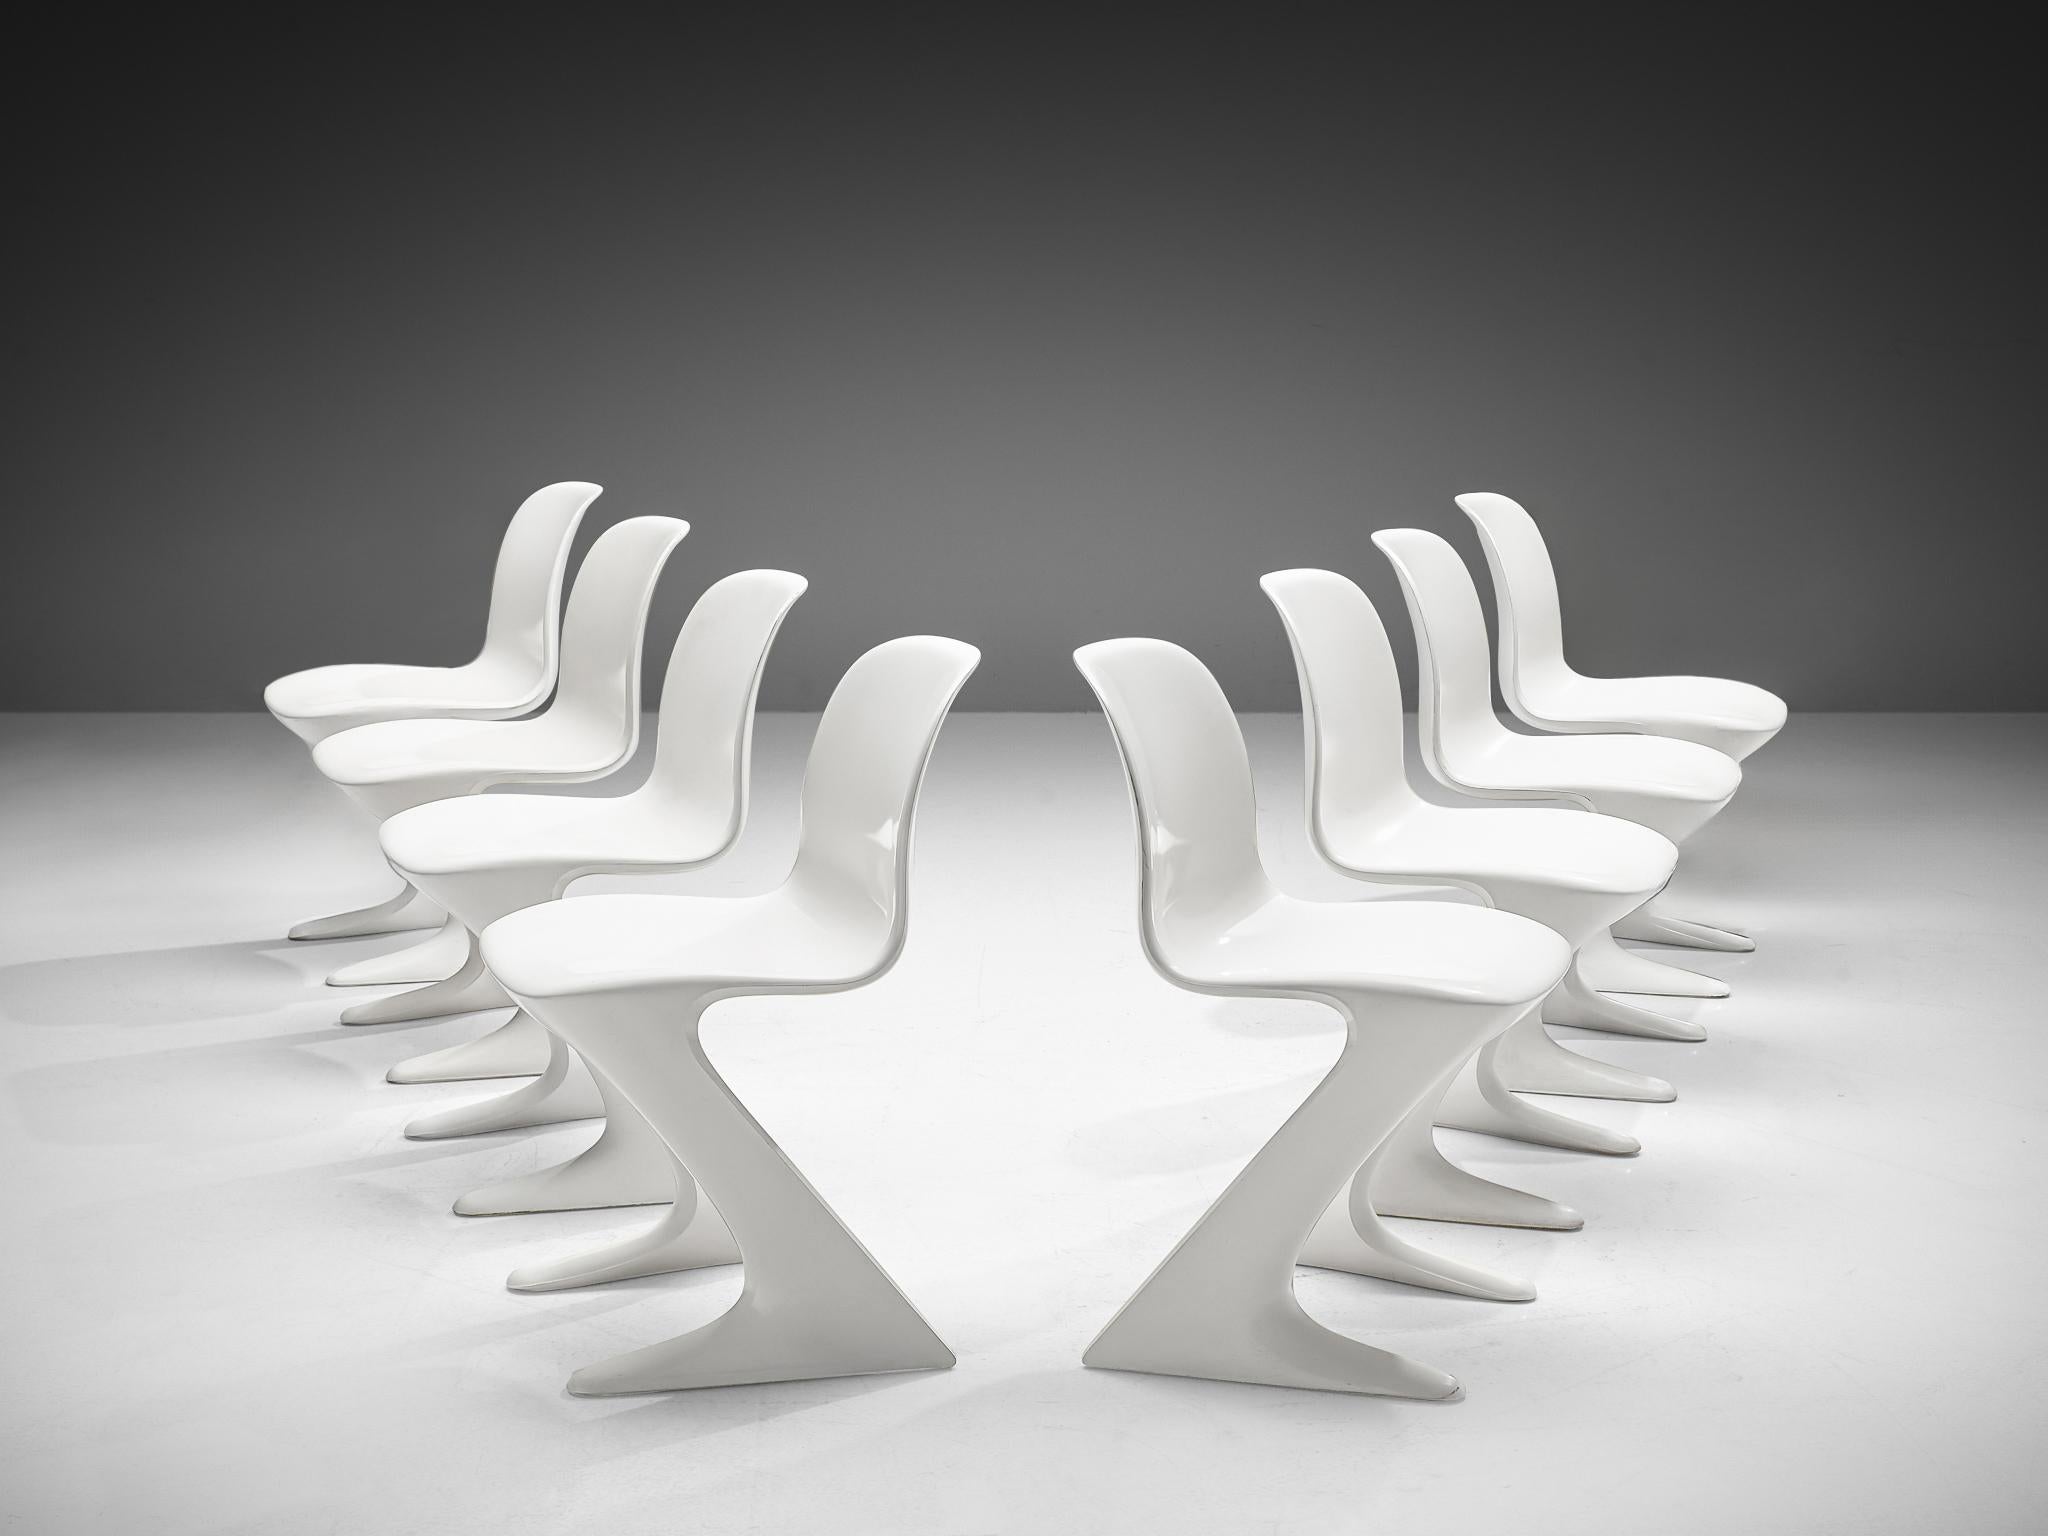 Ernst Moeckl per Trabant, set di otto sedie 'Z', fibra di vetro, Germania, 1968

Questo set di sedie Kangaroo è stato progettato da Ernst Moeckl nel 1968. La sedia è chiamata anche Z-chair, in riferimento alla sua forma. Durante il periodo della